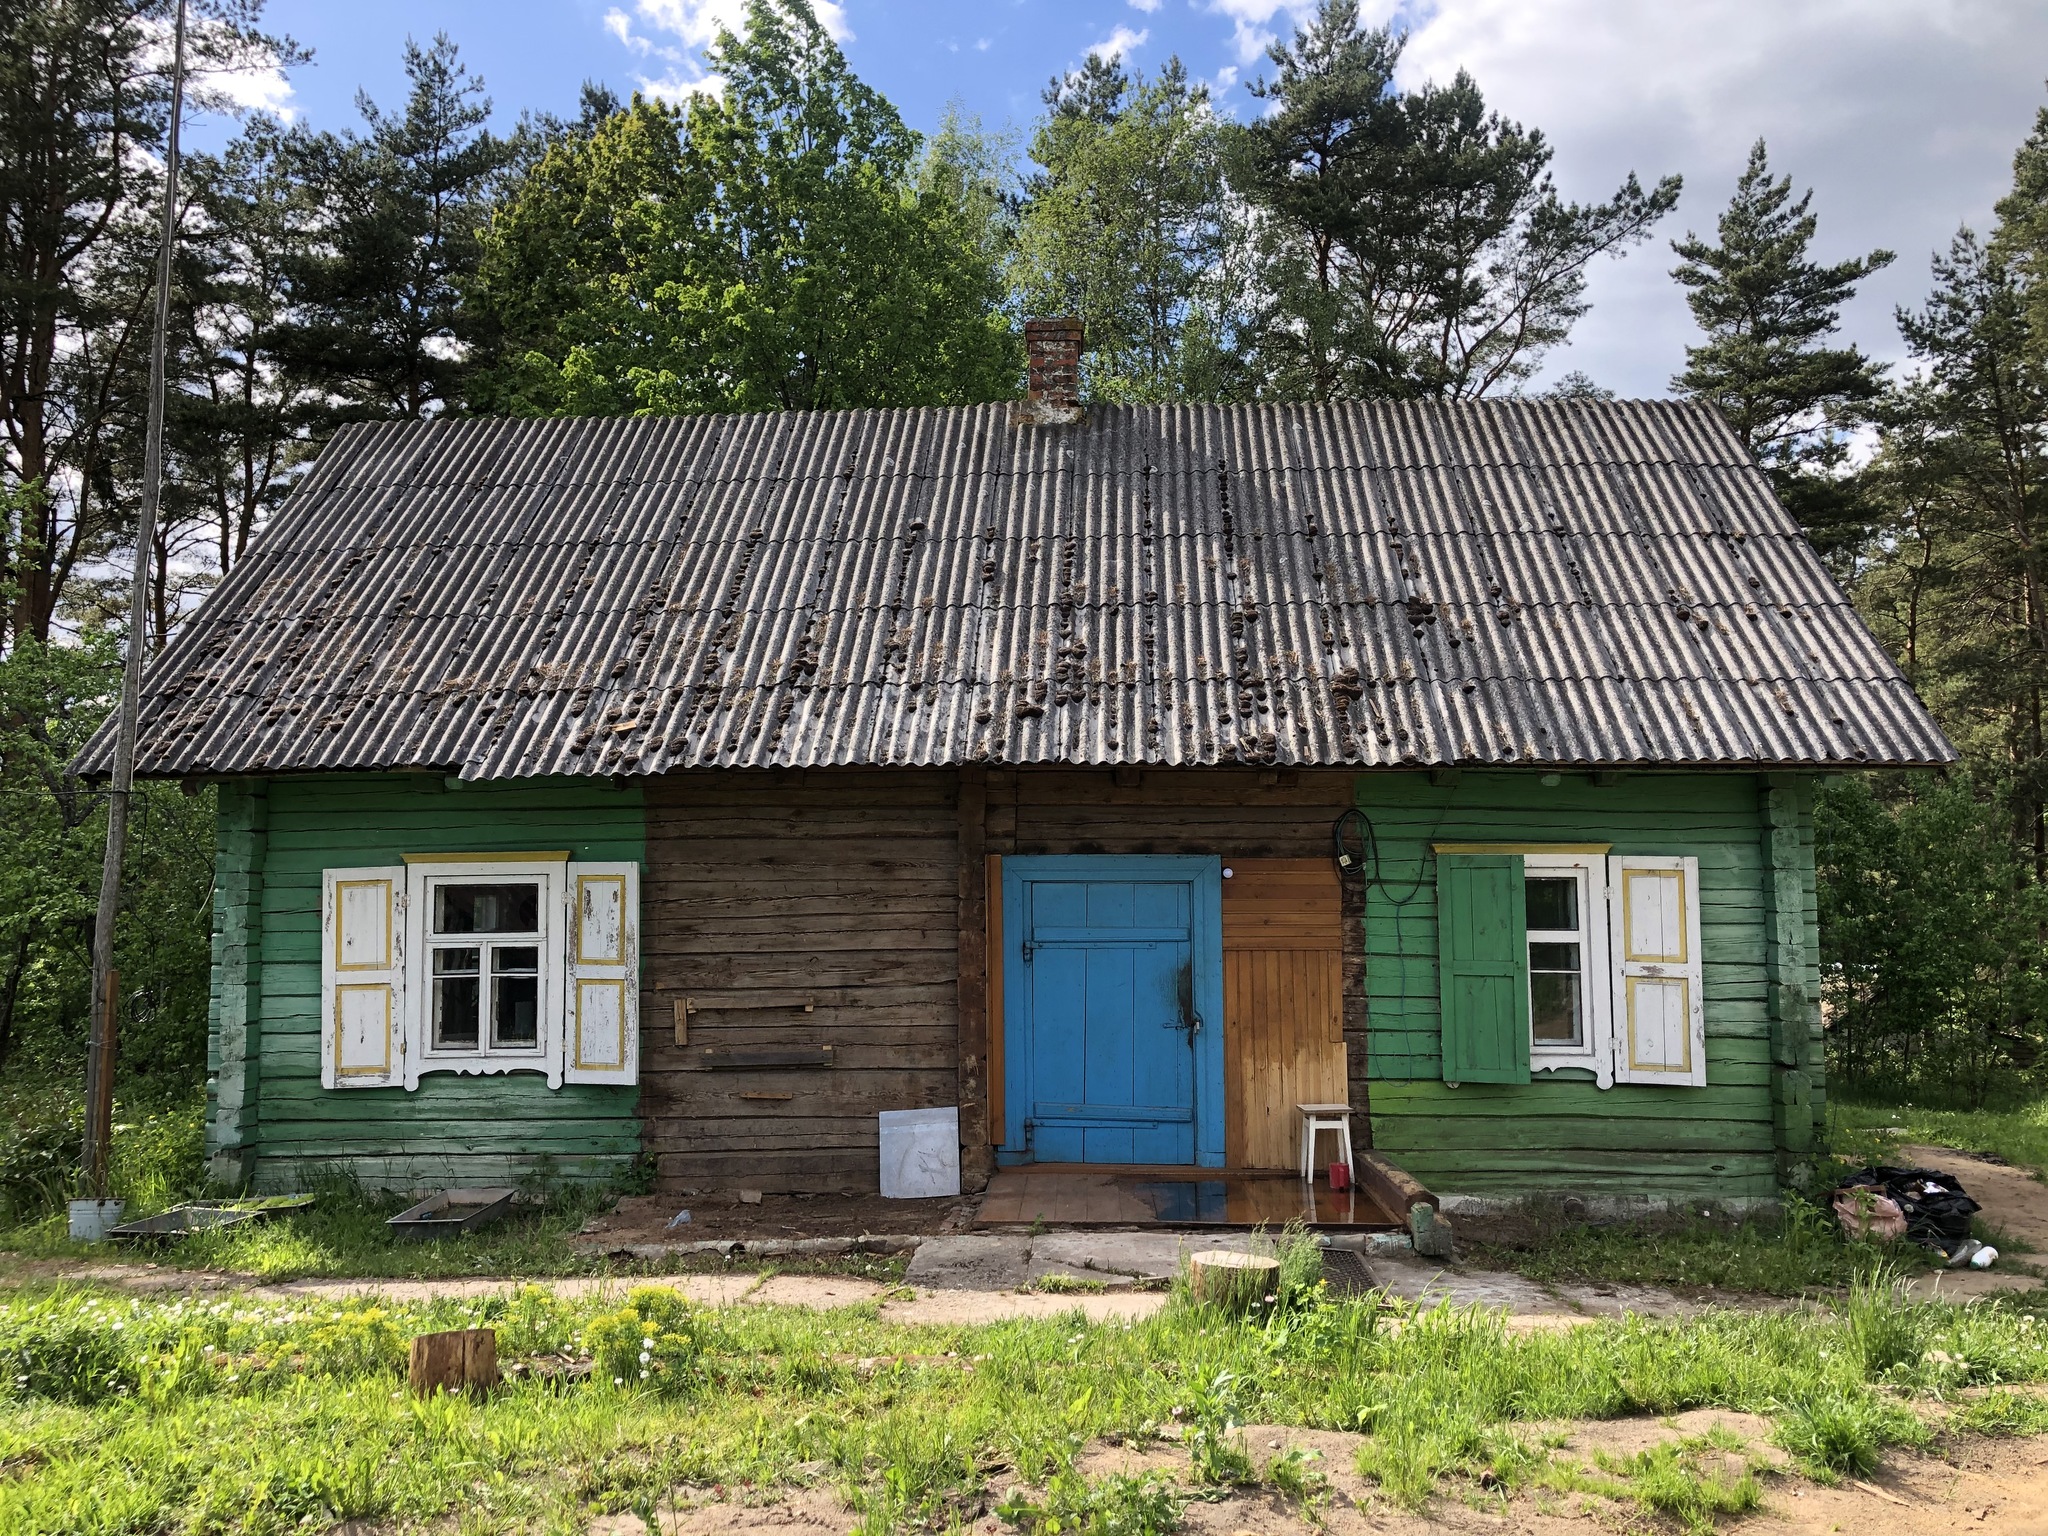 Сельская хата. Старый дом в деревне. Деревенская хата. Превратила старую деревенскую хату в стильное современное жилье. Фото старых домов в деревне.